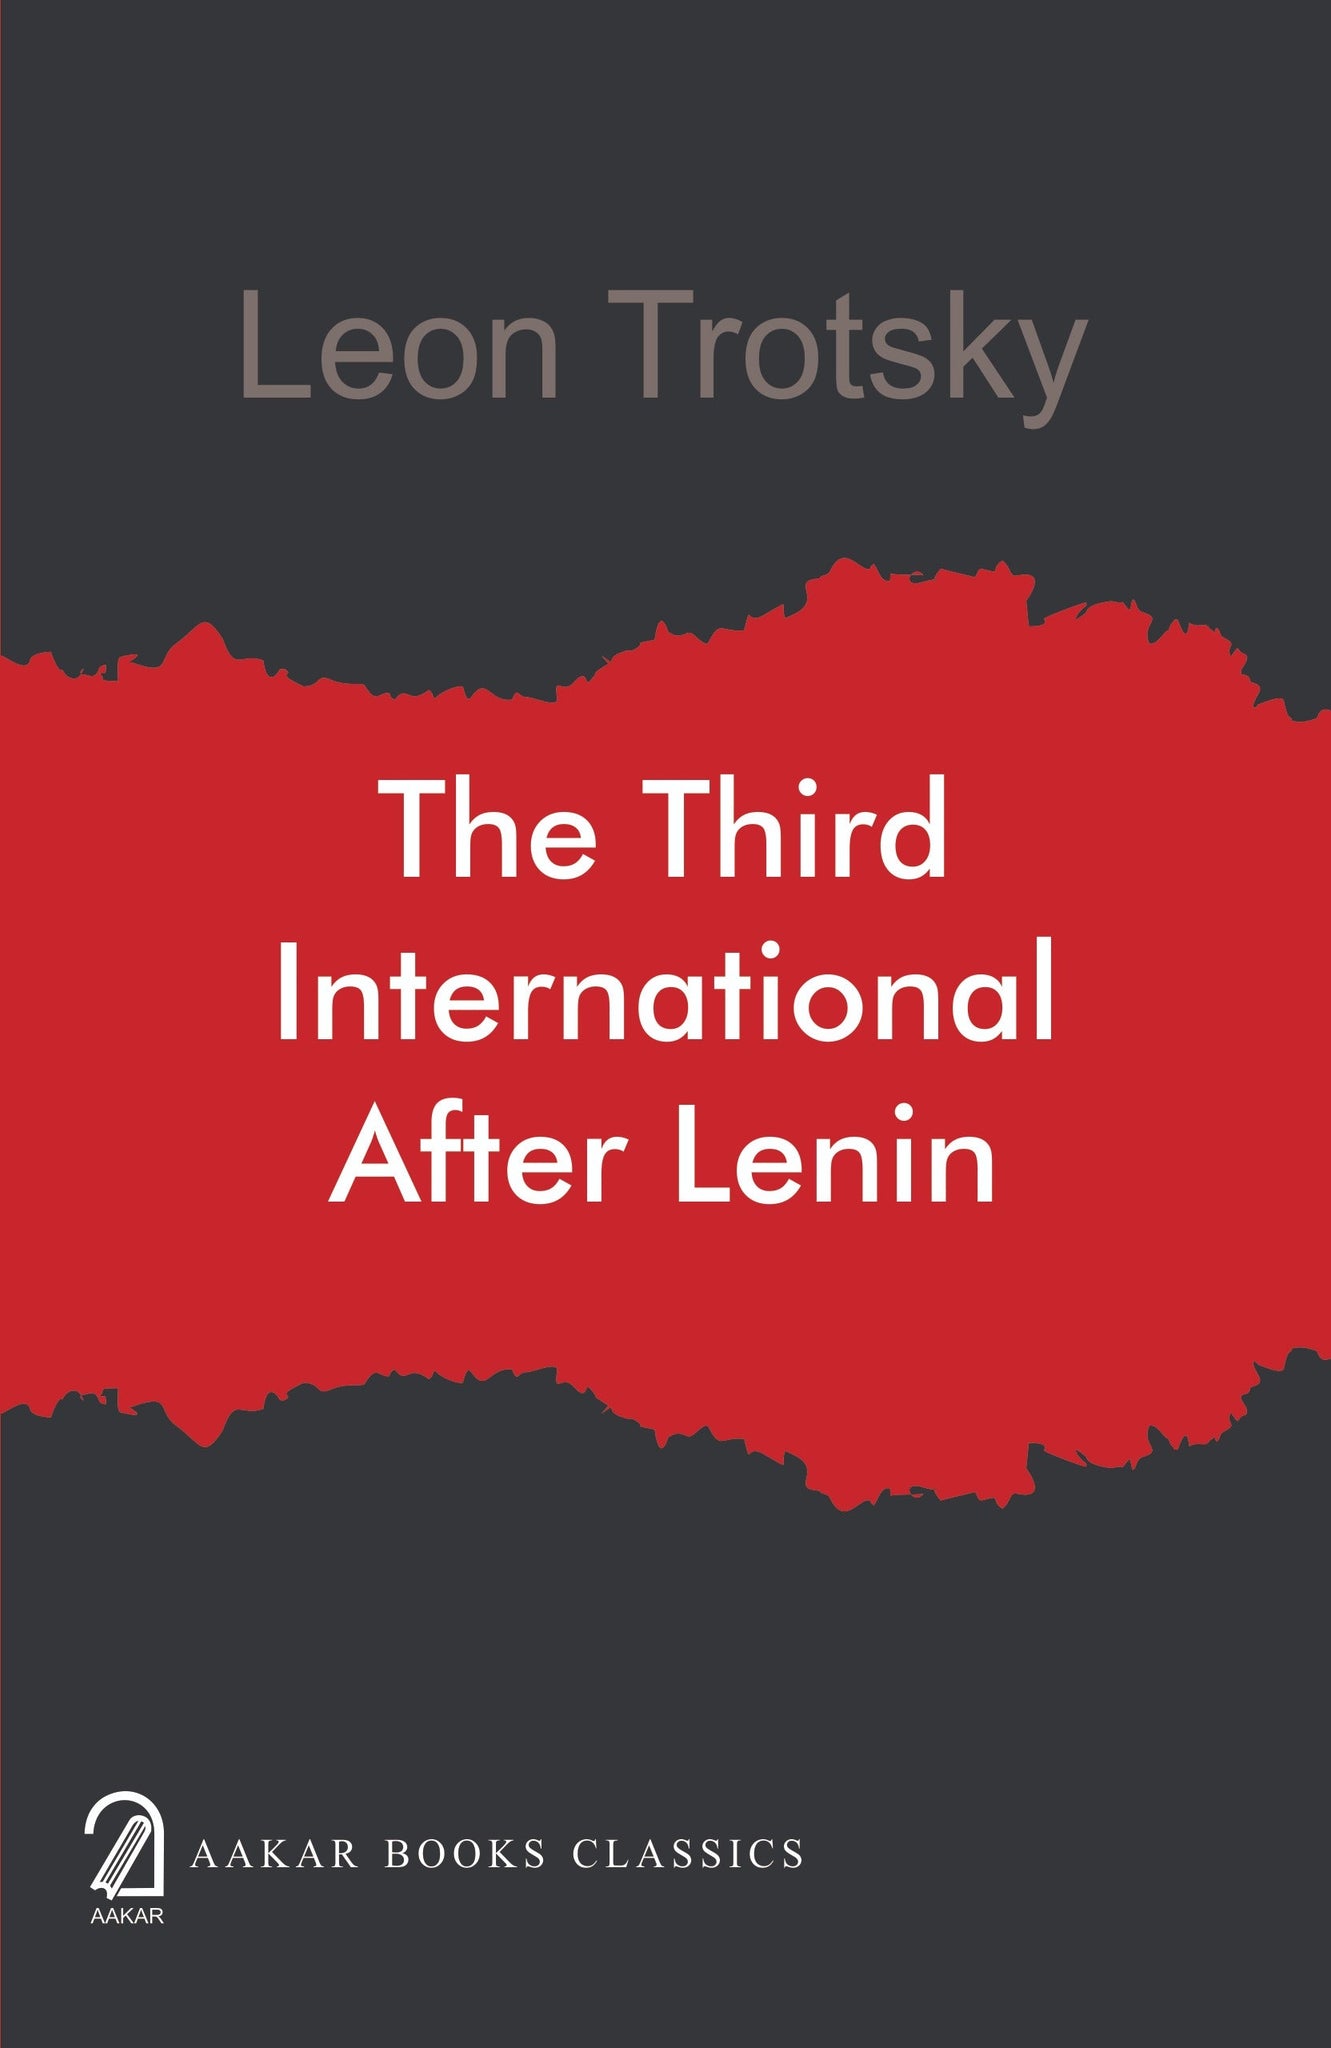 The Third International After Lenin